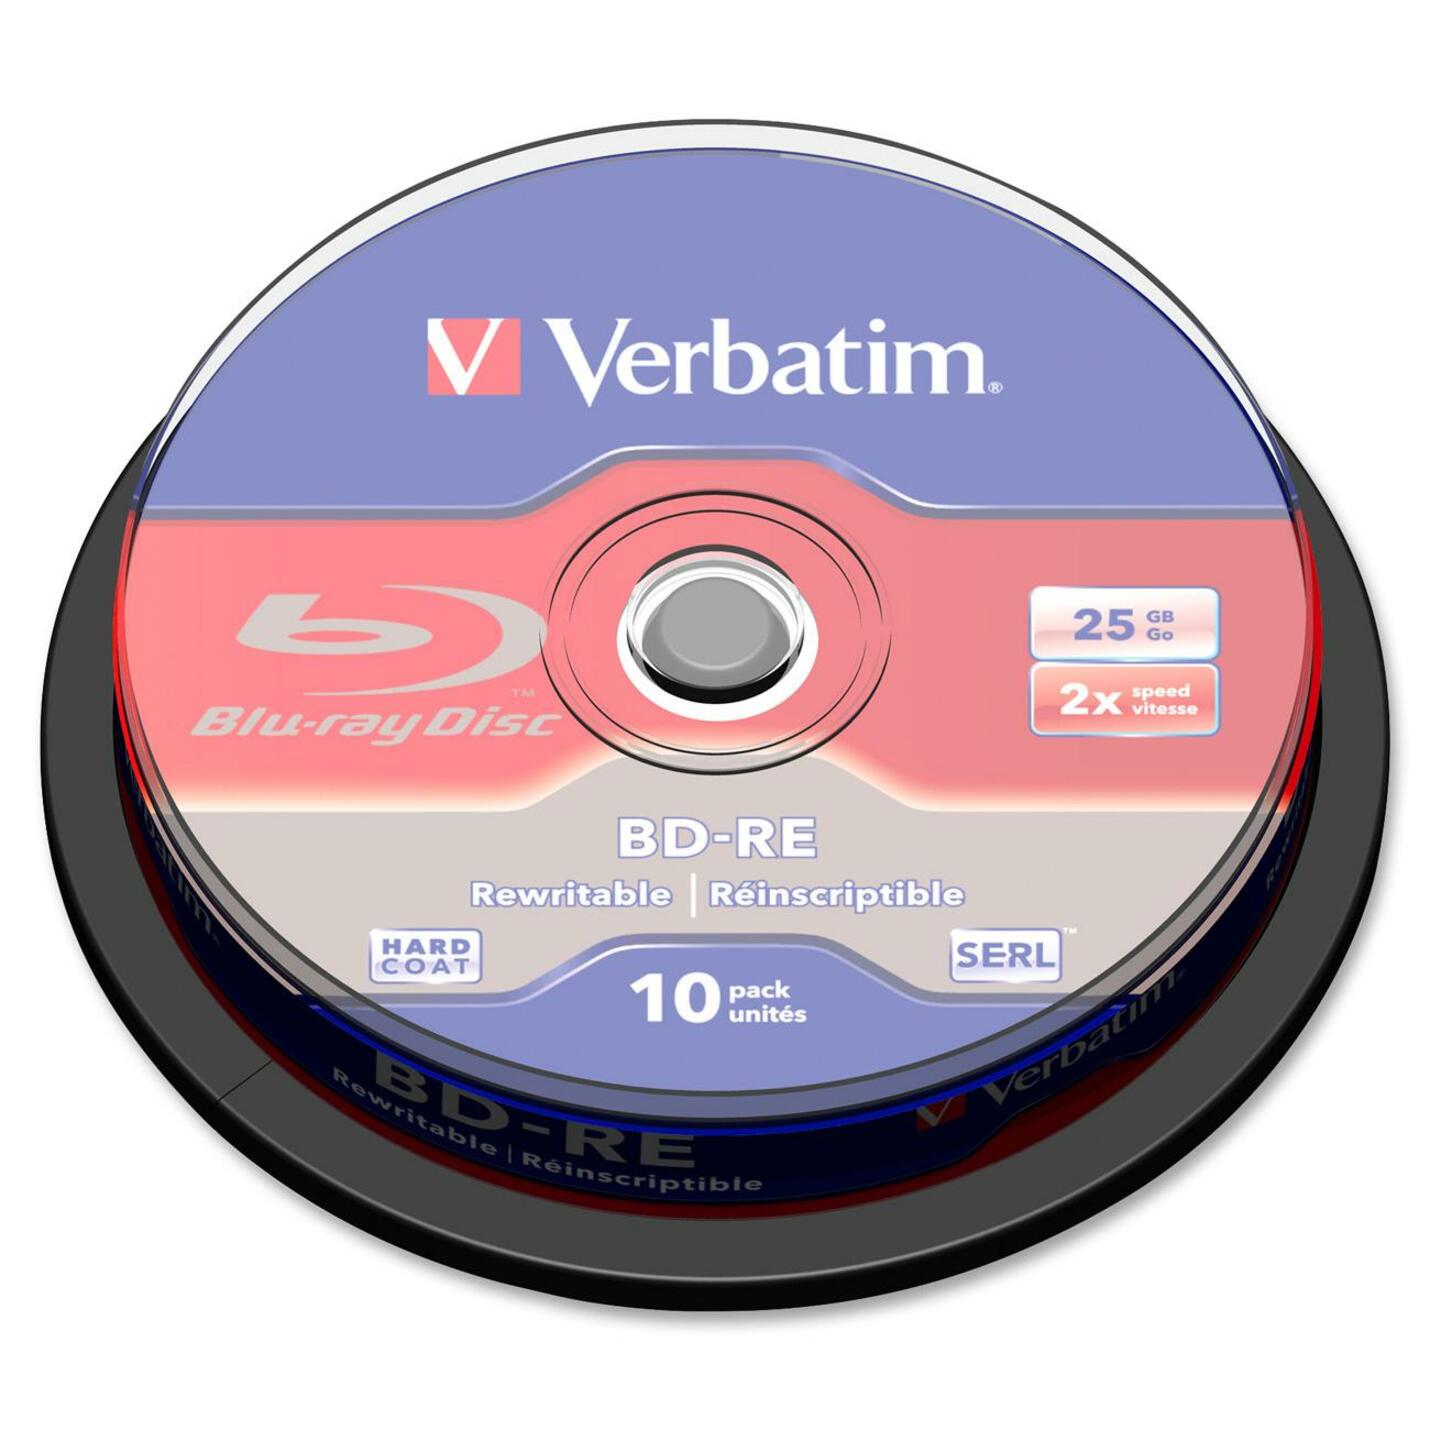 Verbatim 43694 BD-RE SL 25GB 2X 10 Pack SP, Branded Surface